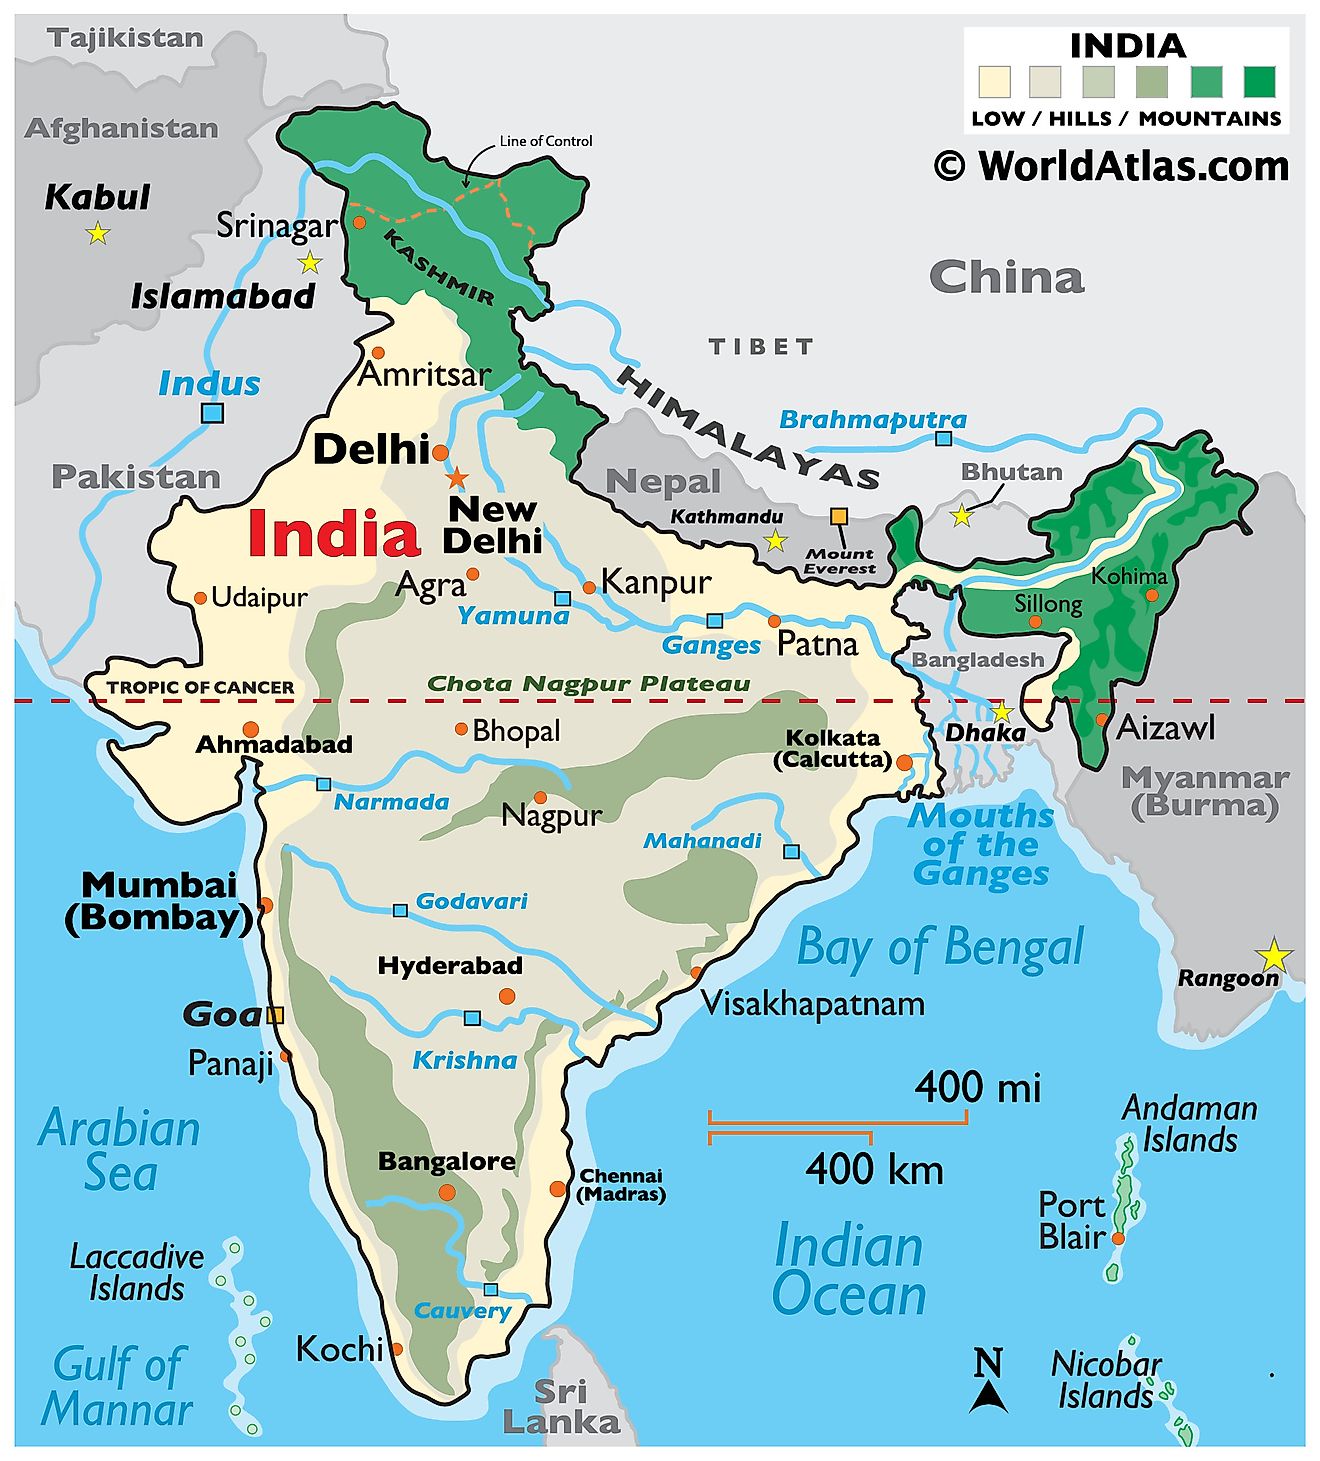 Mapa físico de la India que muestra el relieve, las cadenas montañosas, las mesetas, los principales ríos, las fronteras internacionales, las islas, las ciudades importantes y más.